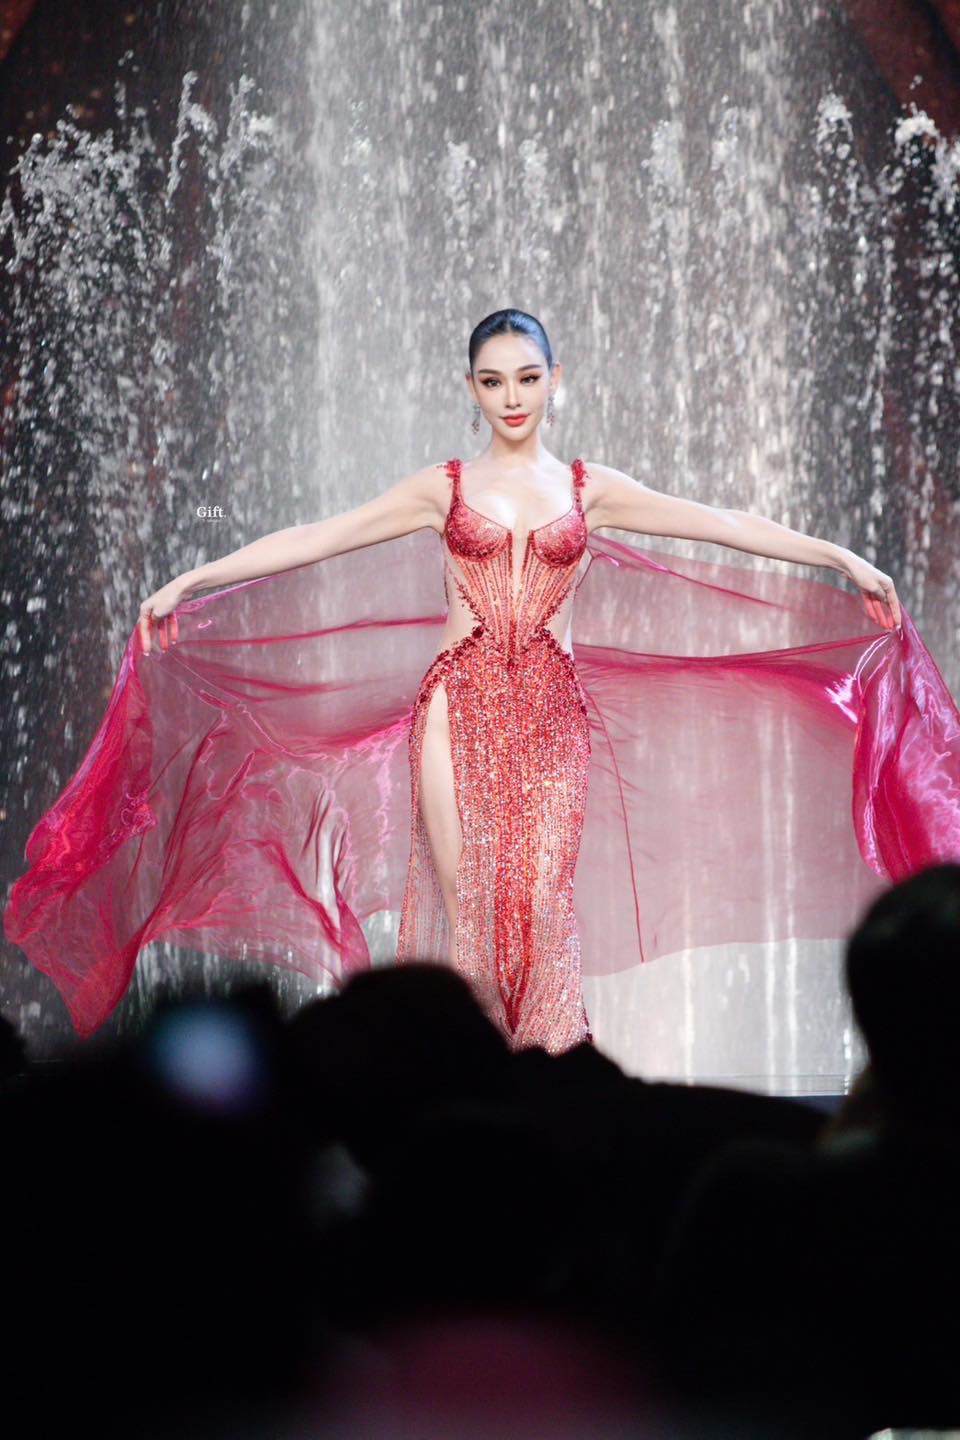 Tân Hoa hậu Hoà bình Thái Lan đẹp như búp bê sống, từng diện hở lưng trên phố Việt - 2